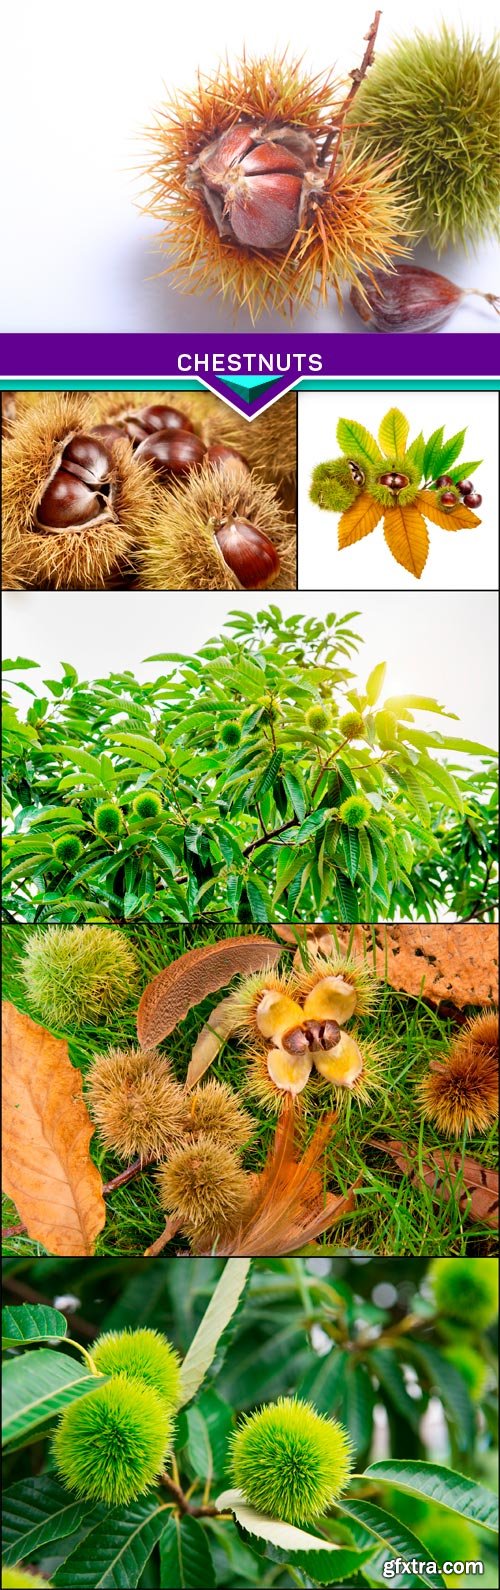 Chestnuts 6x JPEG